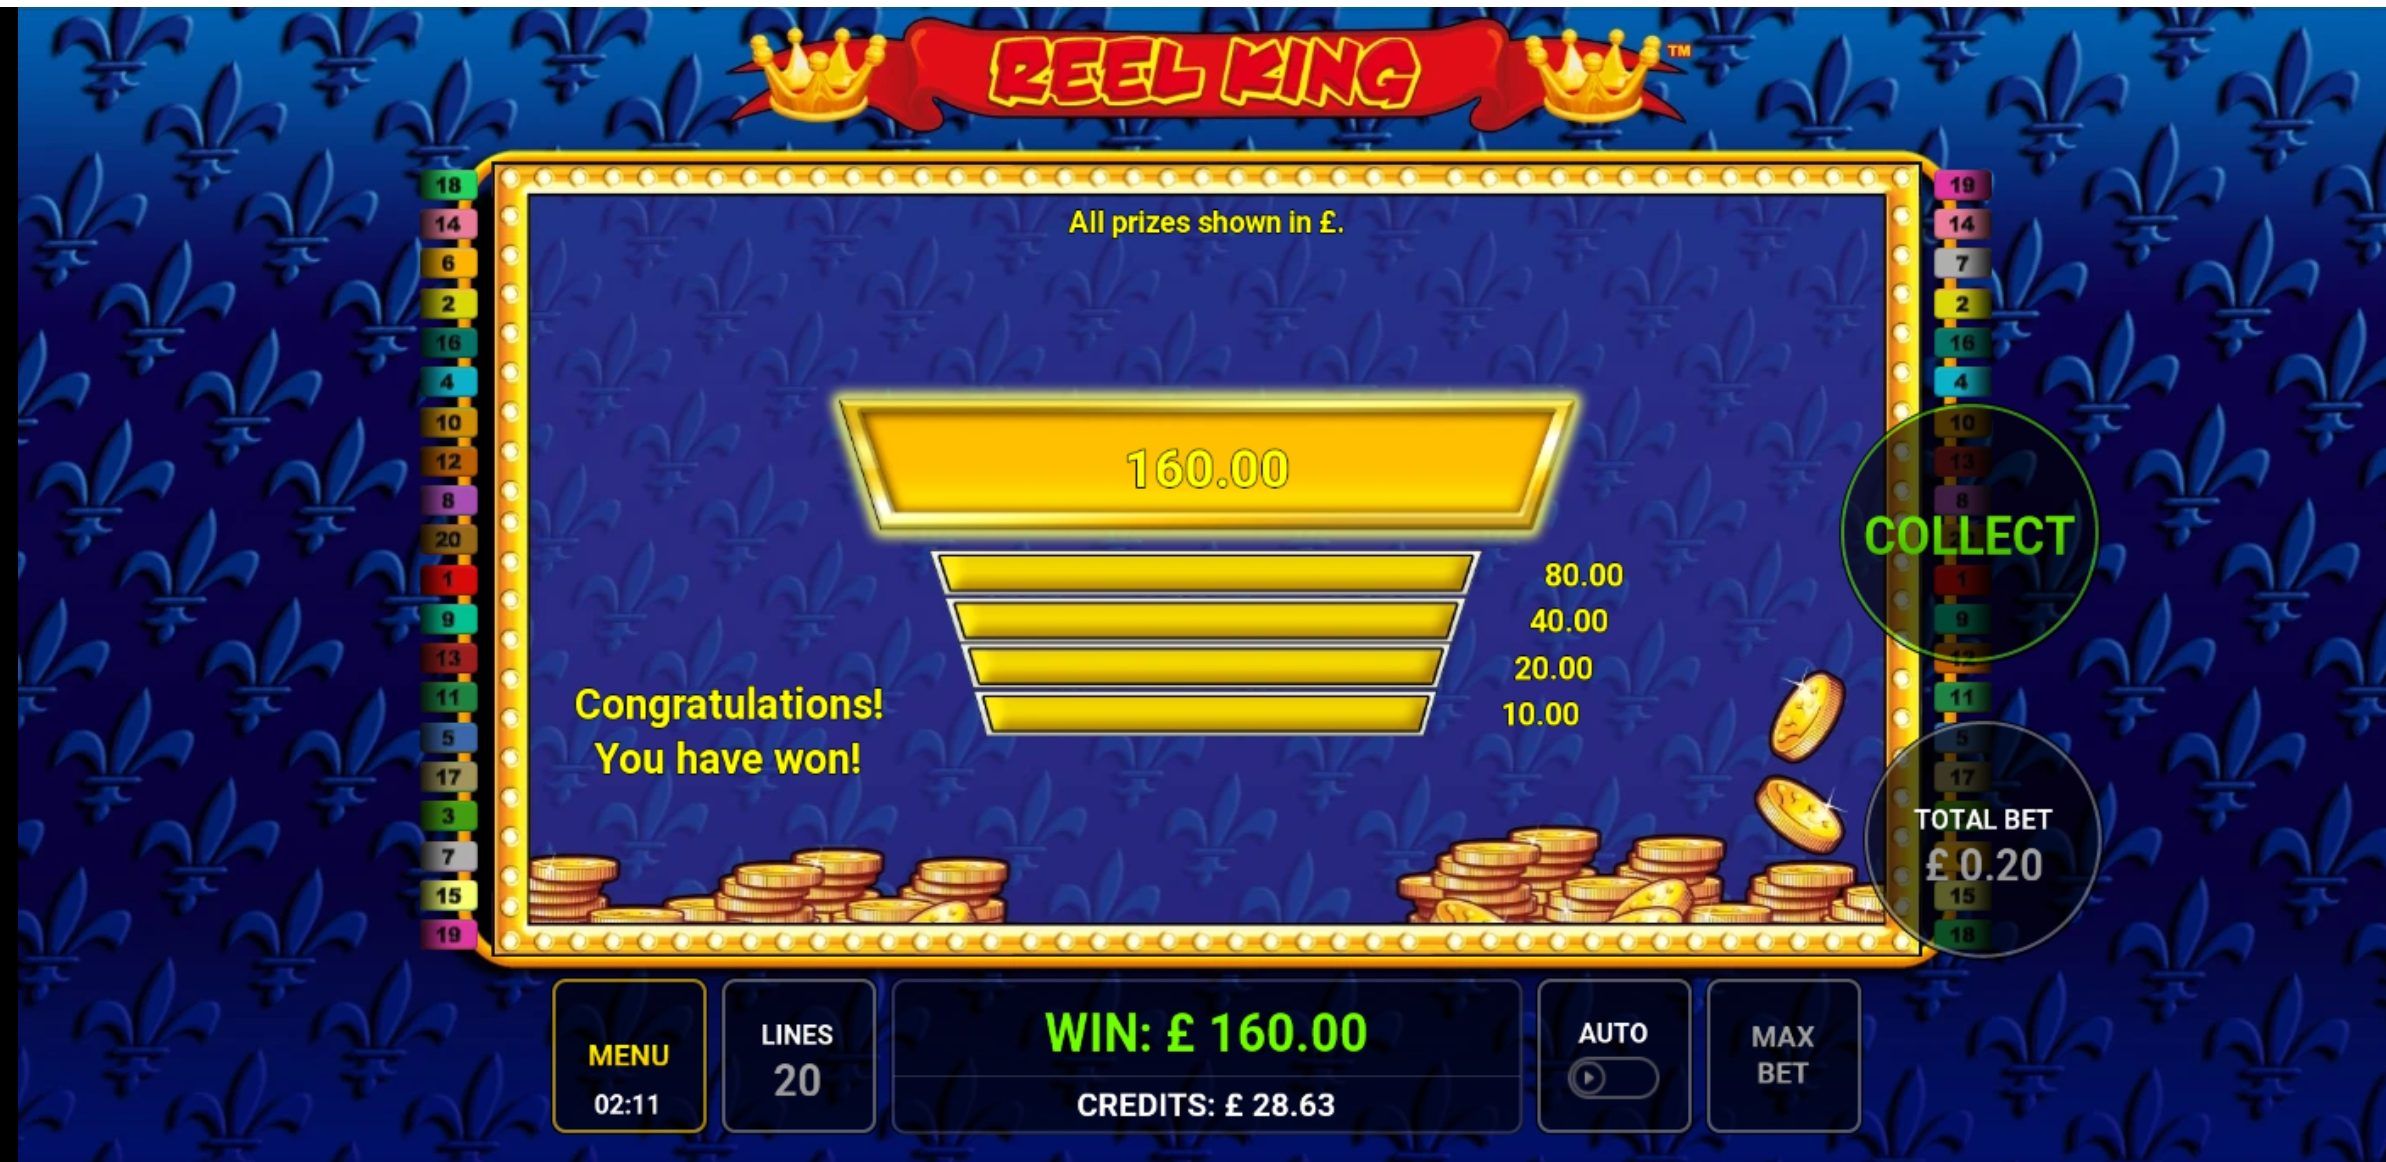 Reel King Slot Gameplay